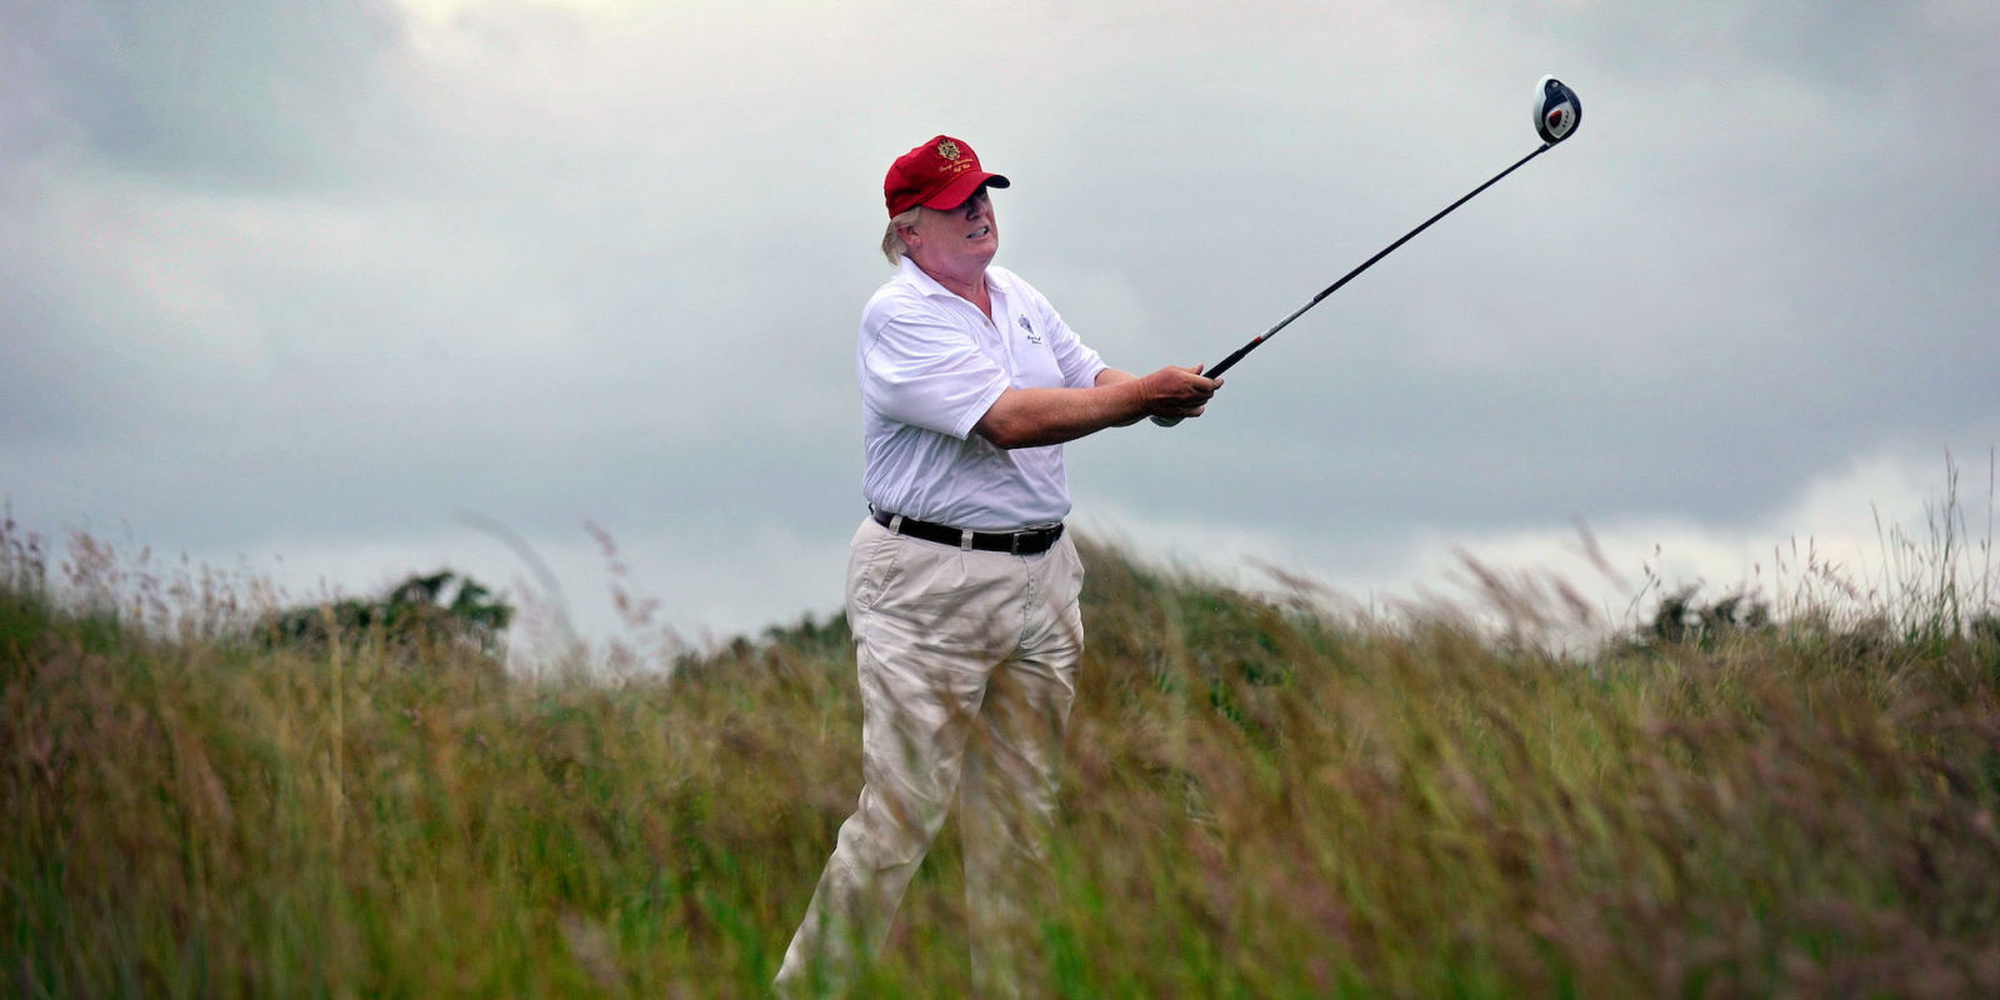 Tổng thống Trump bị chỉ trích vì chơi golf quá nhiều (Ảnh: Esquire)